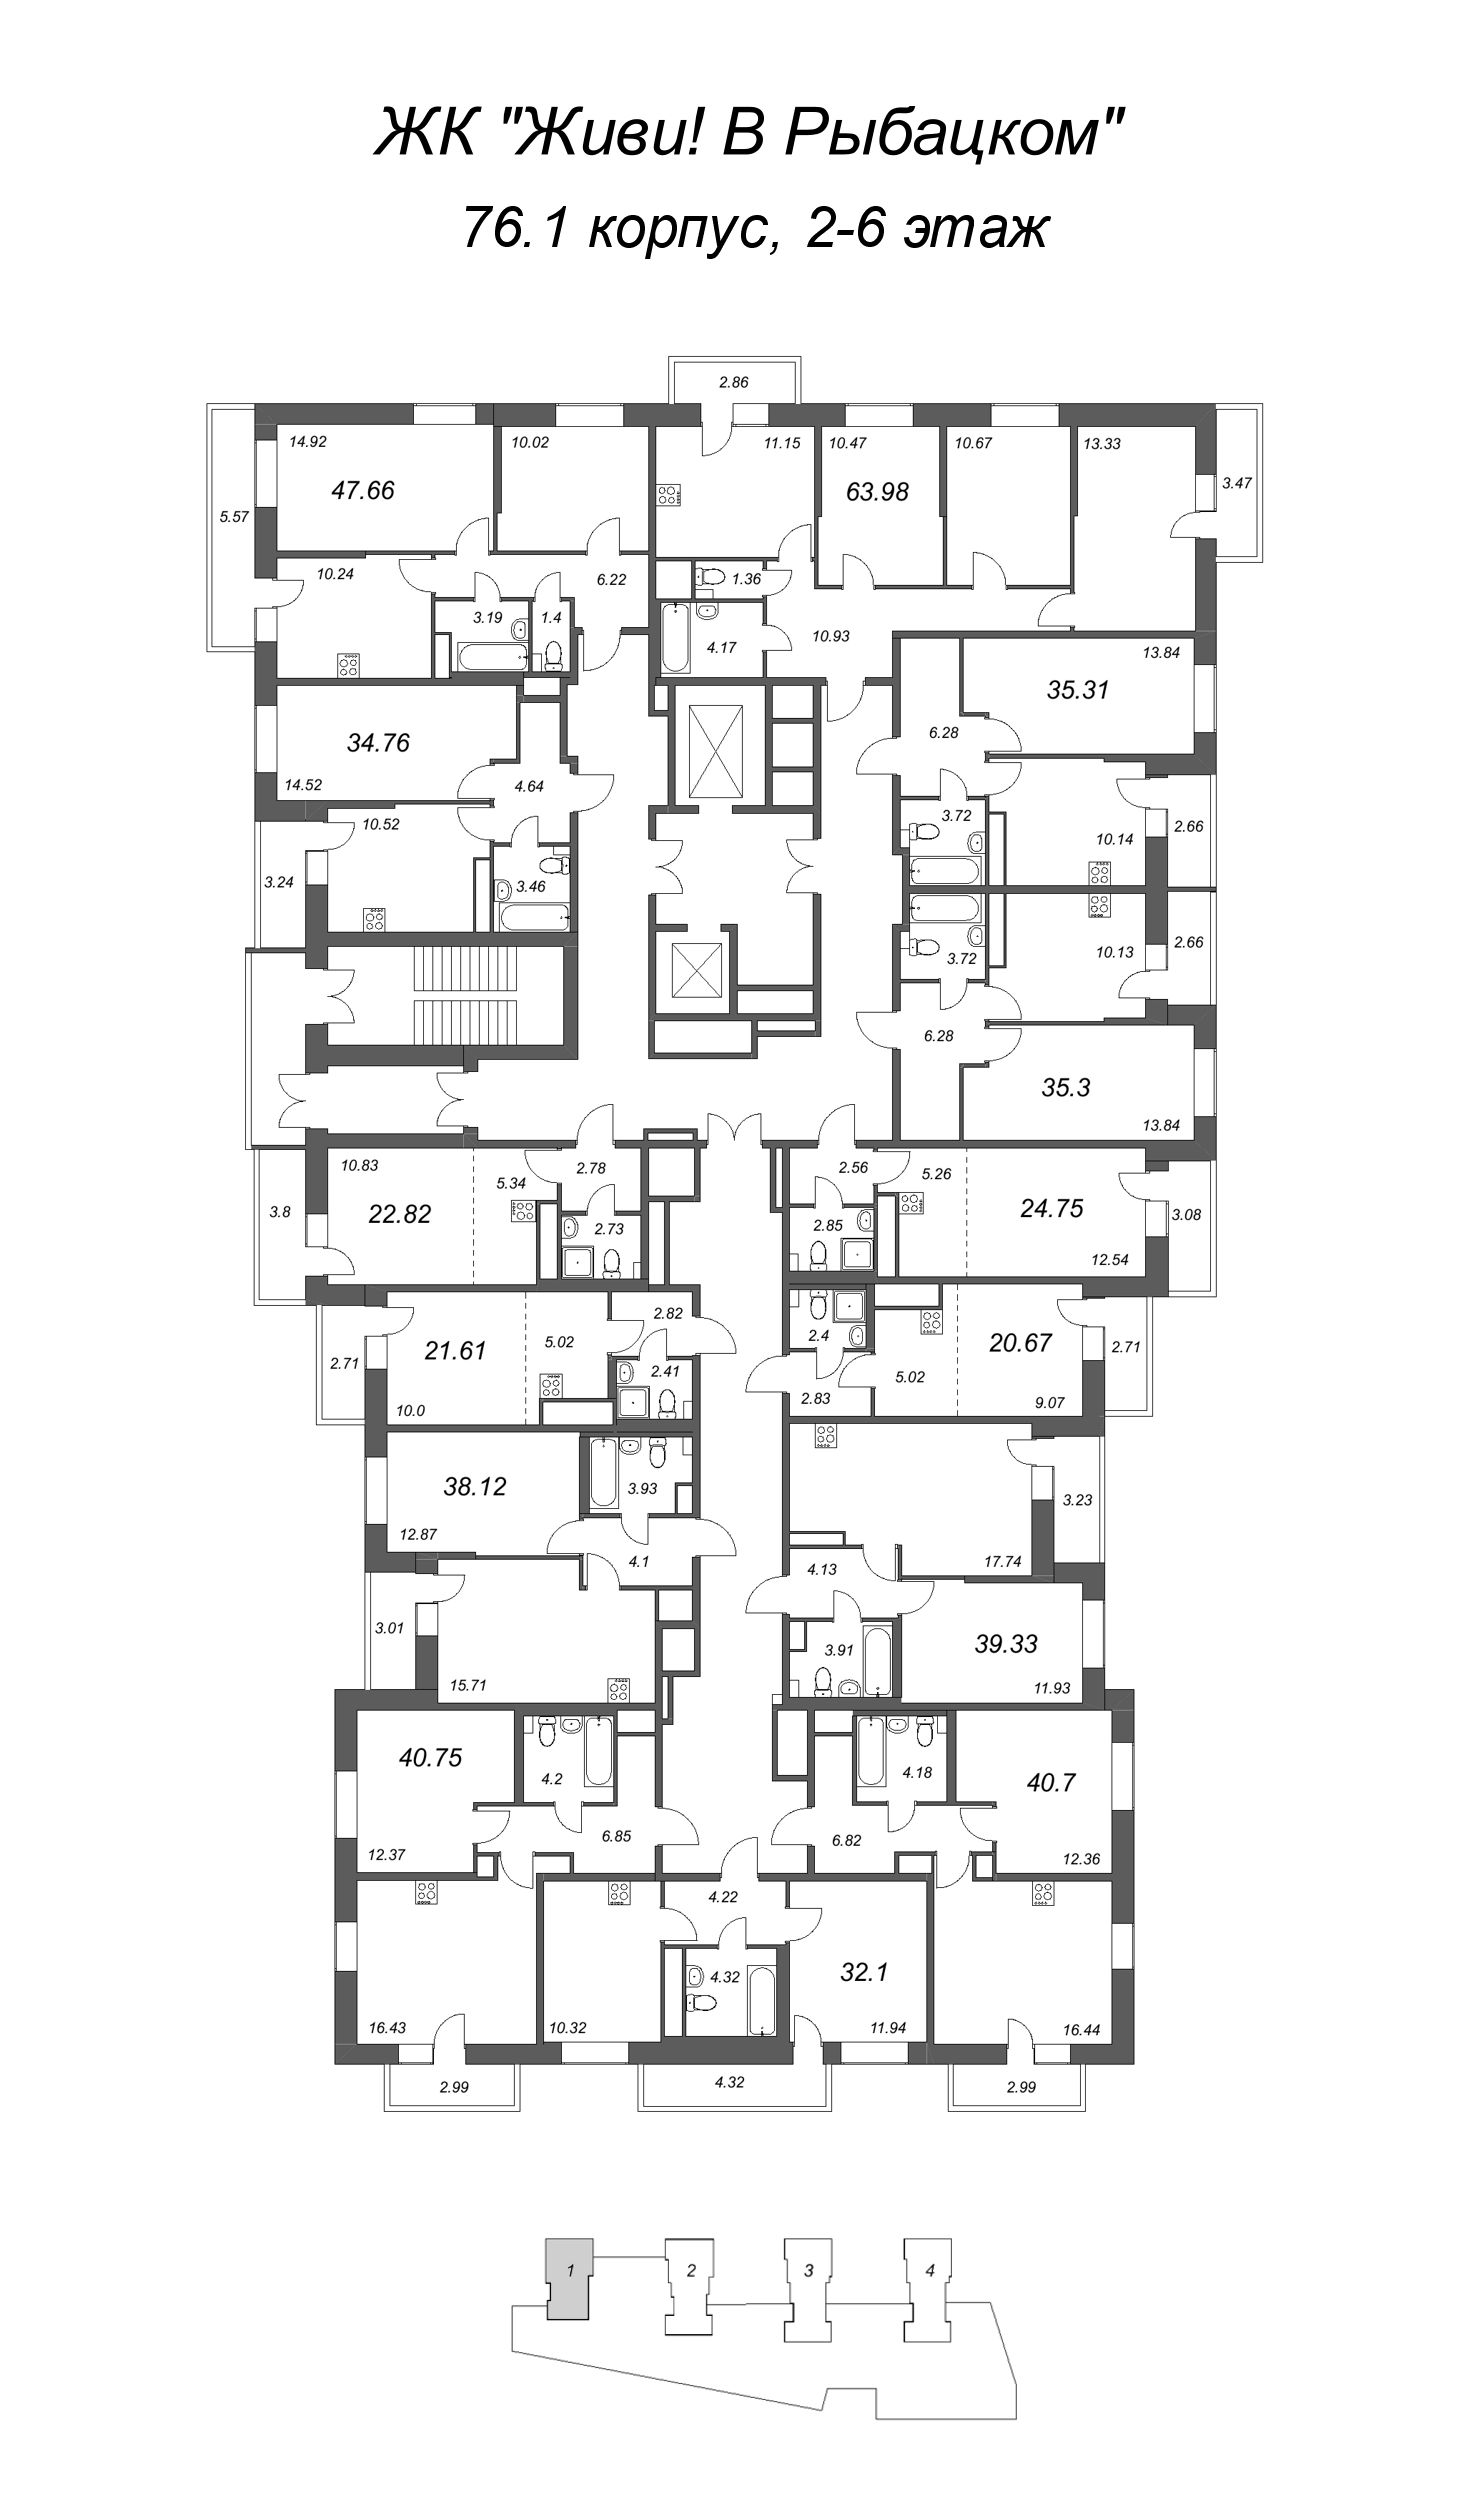 Квартира-студия, 24.75 м² в ЖК "Живи! В Рыбацком" - планировка этажа